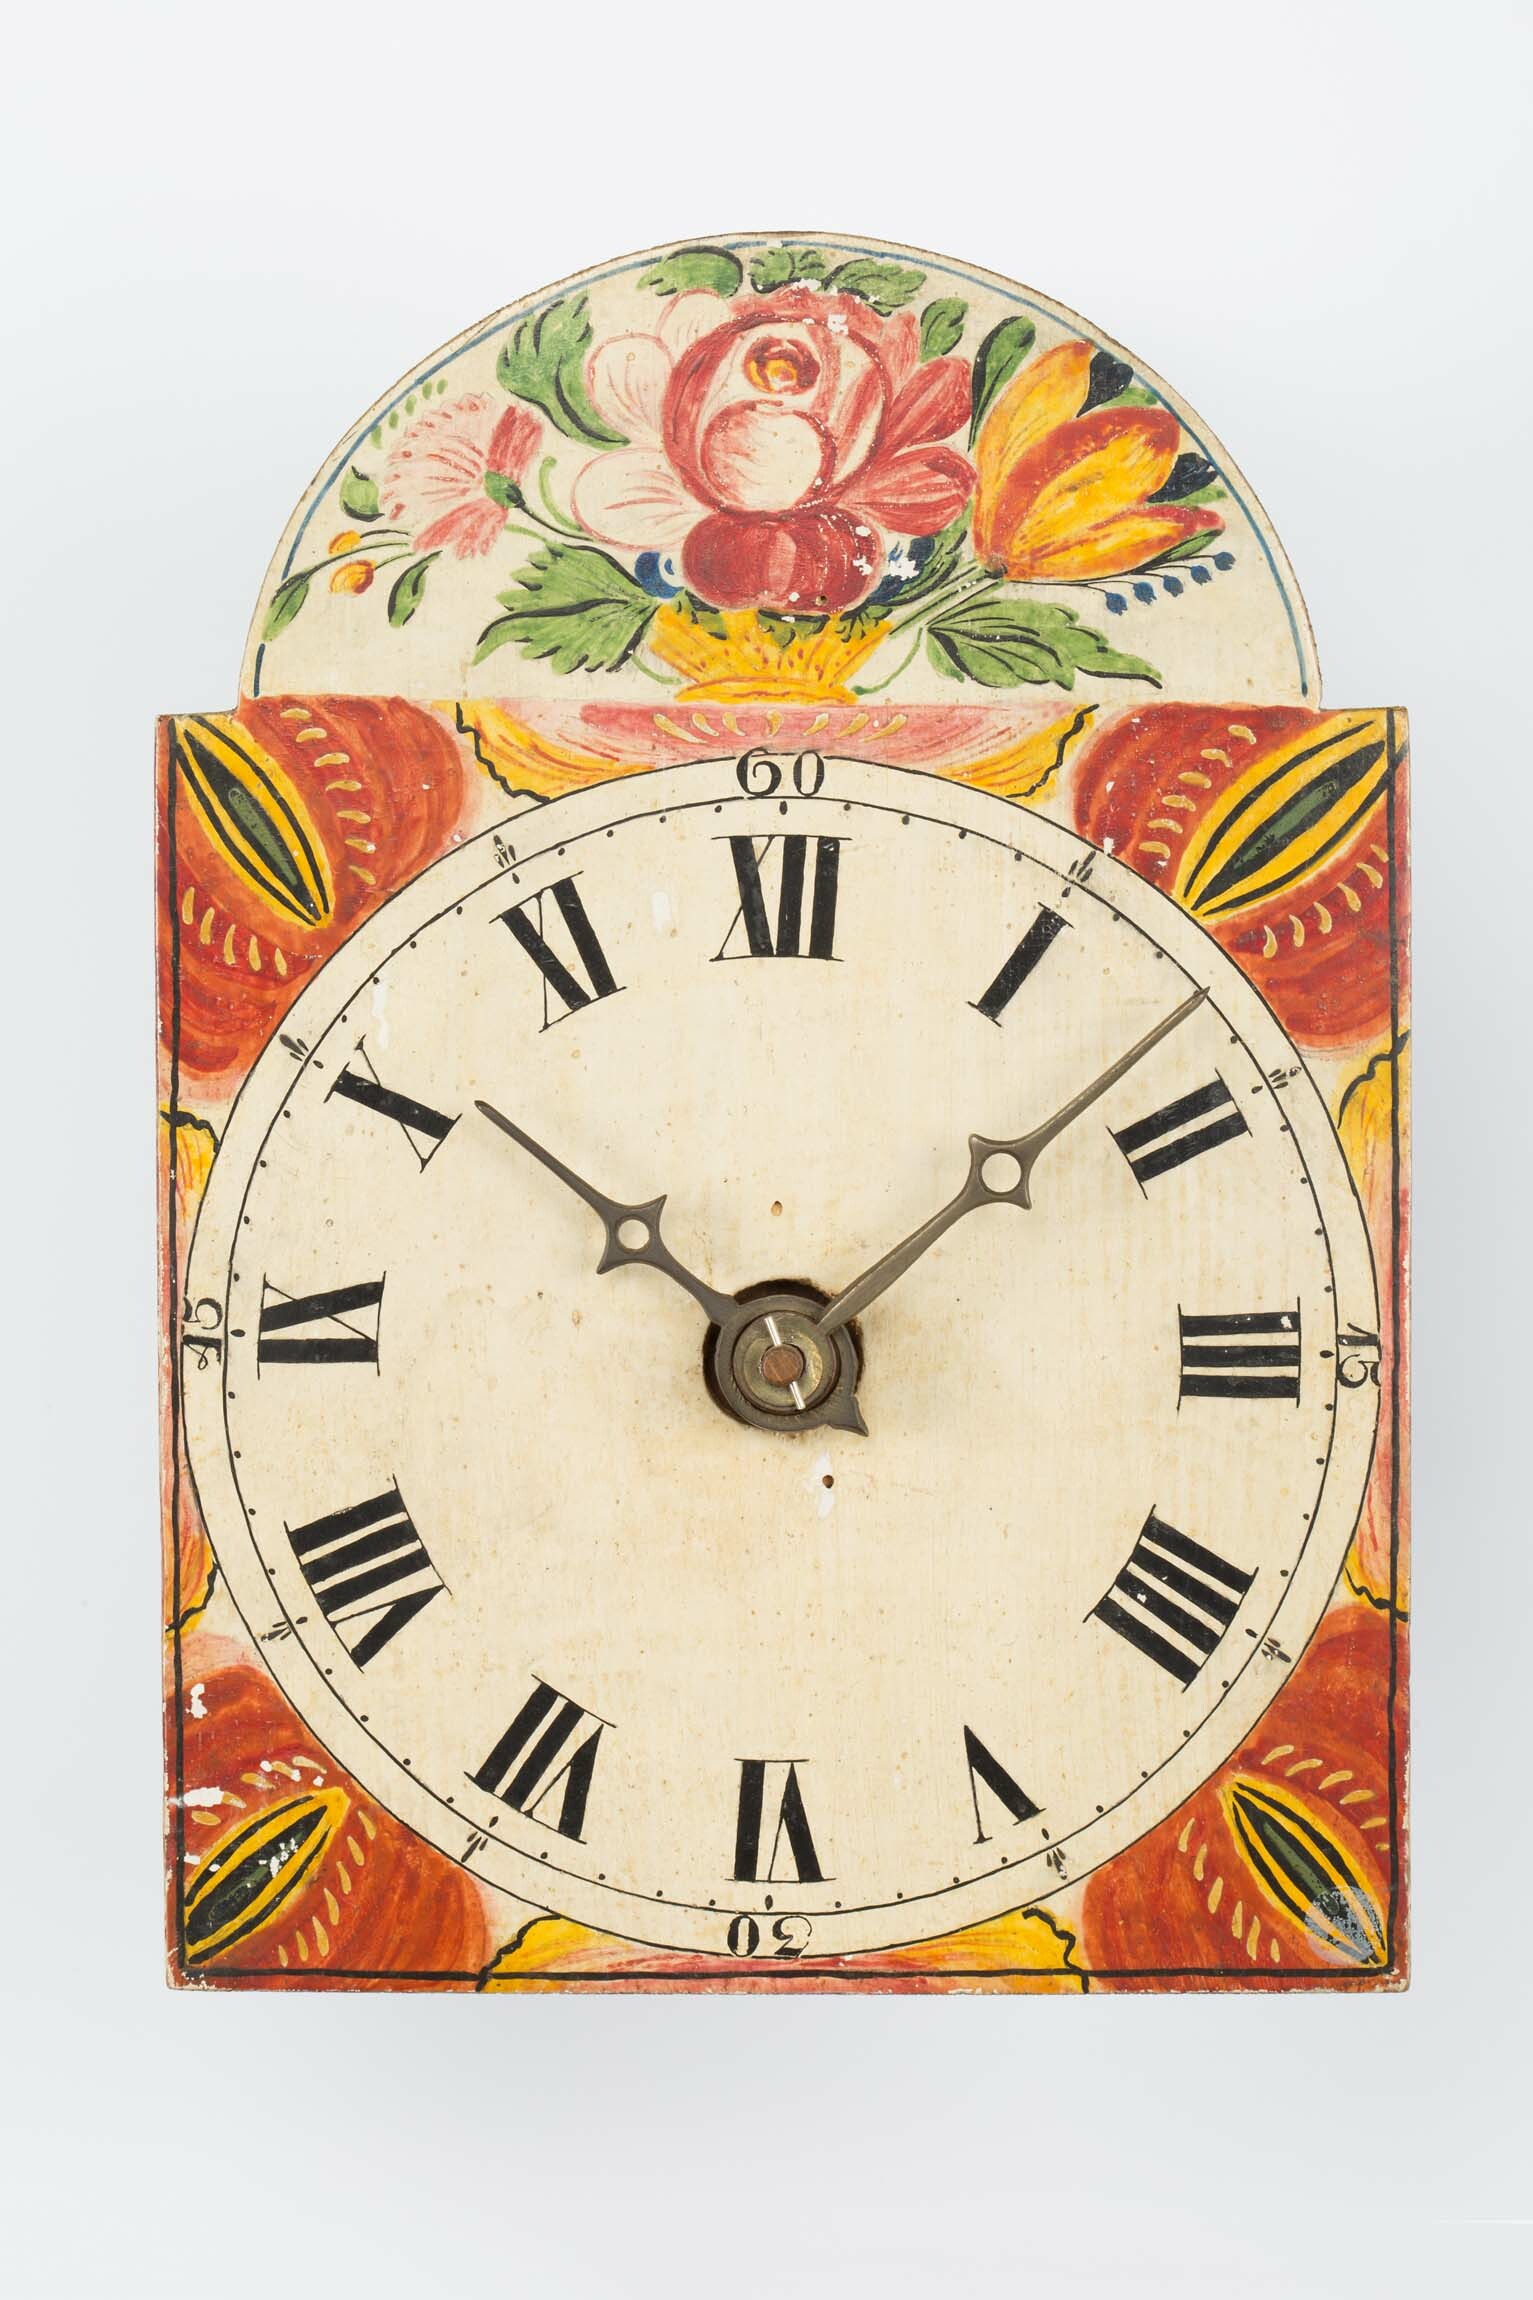 Lackschilduhr, Schwarzwald, um 1800 (Deutsches Uhrenmuseum CC BY-SA)